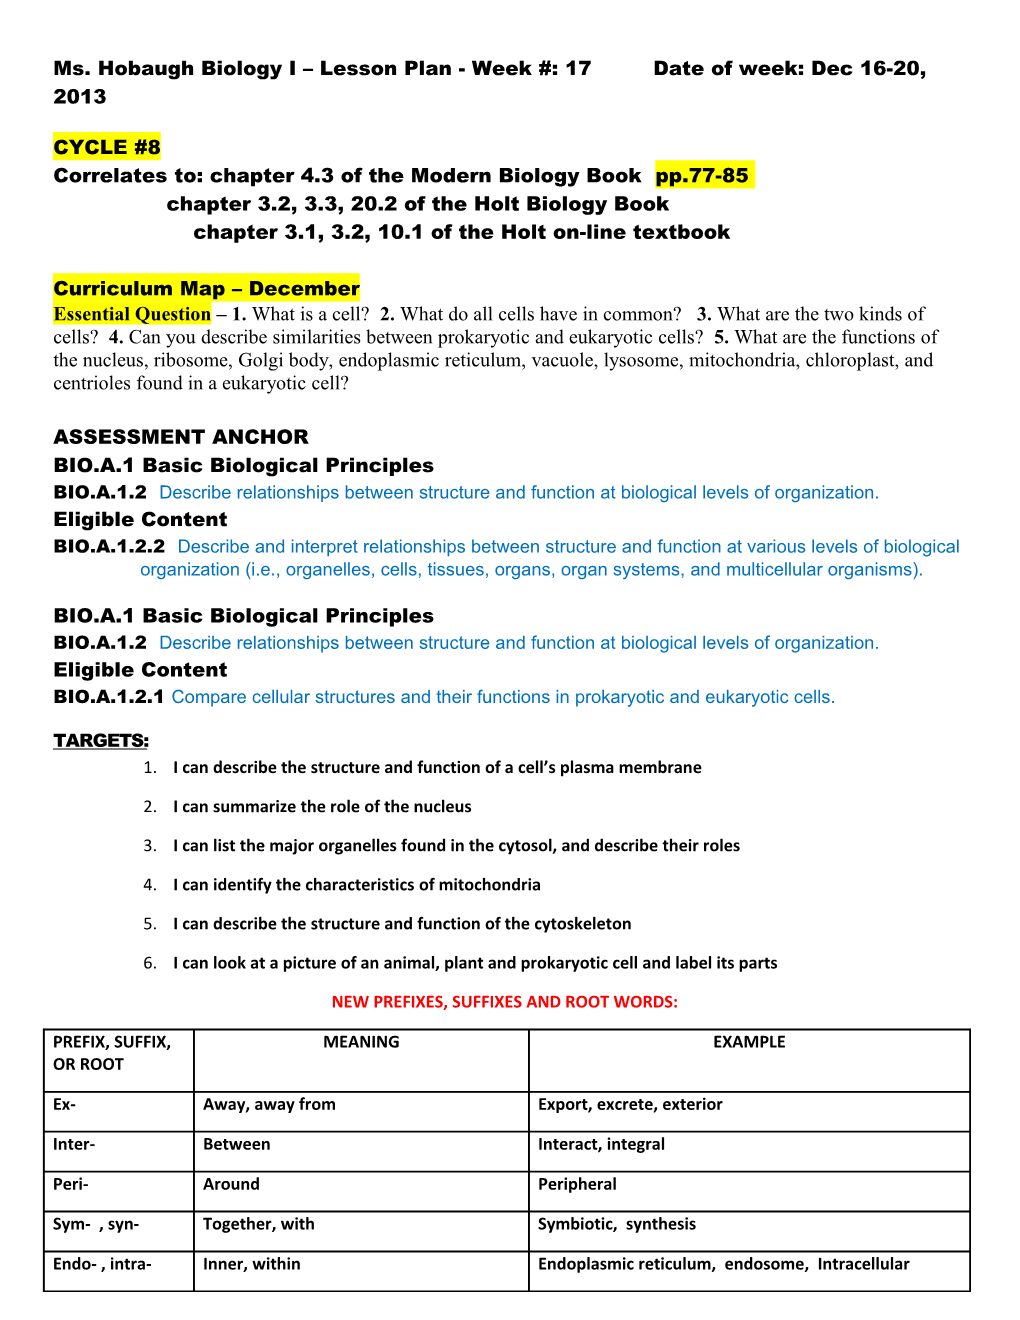 Ms. Hobaugh Biology I Lesson Plan - Week #: 17 Date of Week: Dec 16-20, 2013